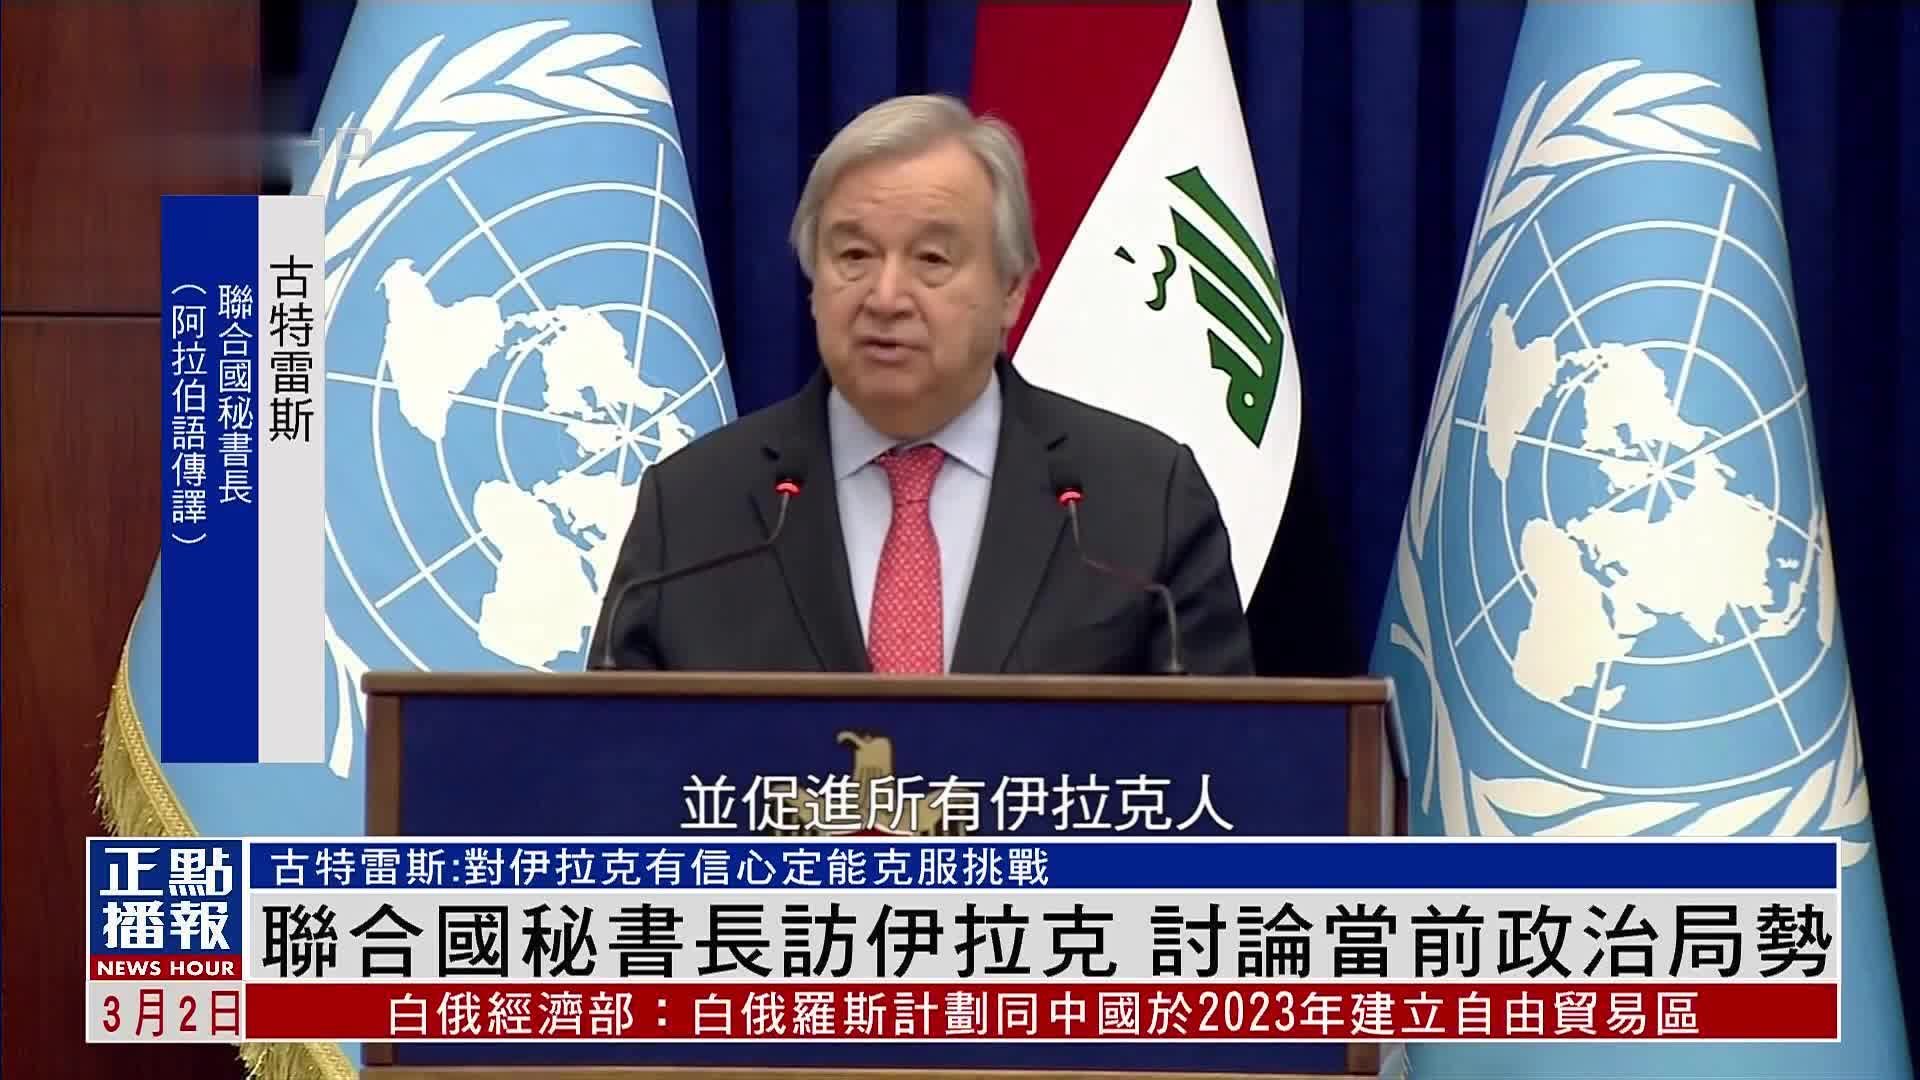 联合国秘书长访伊拉克 讨论当前政治局势